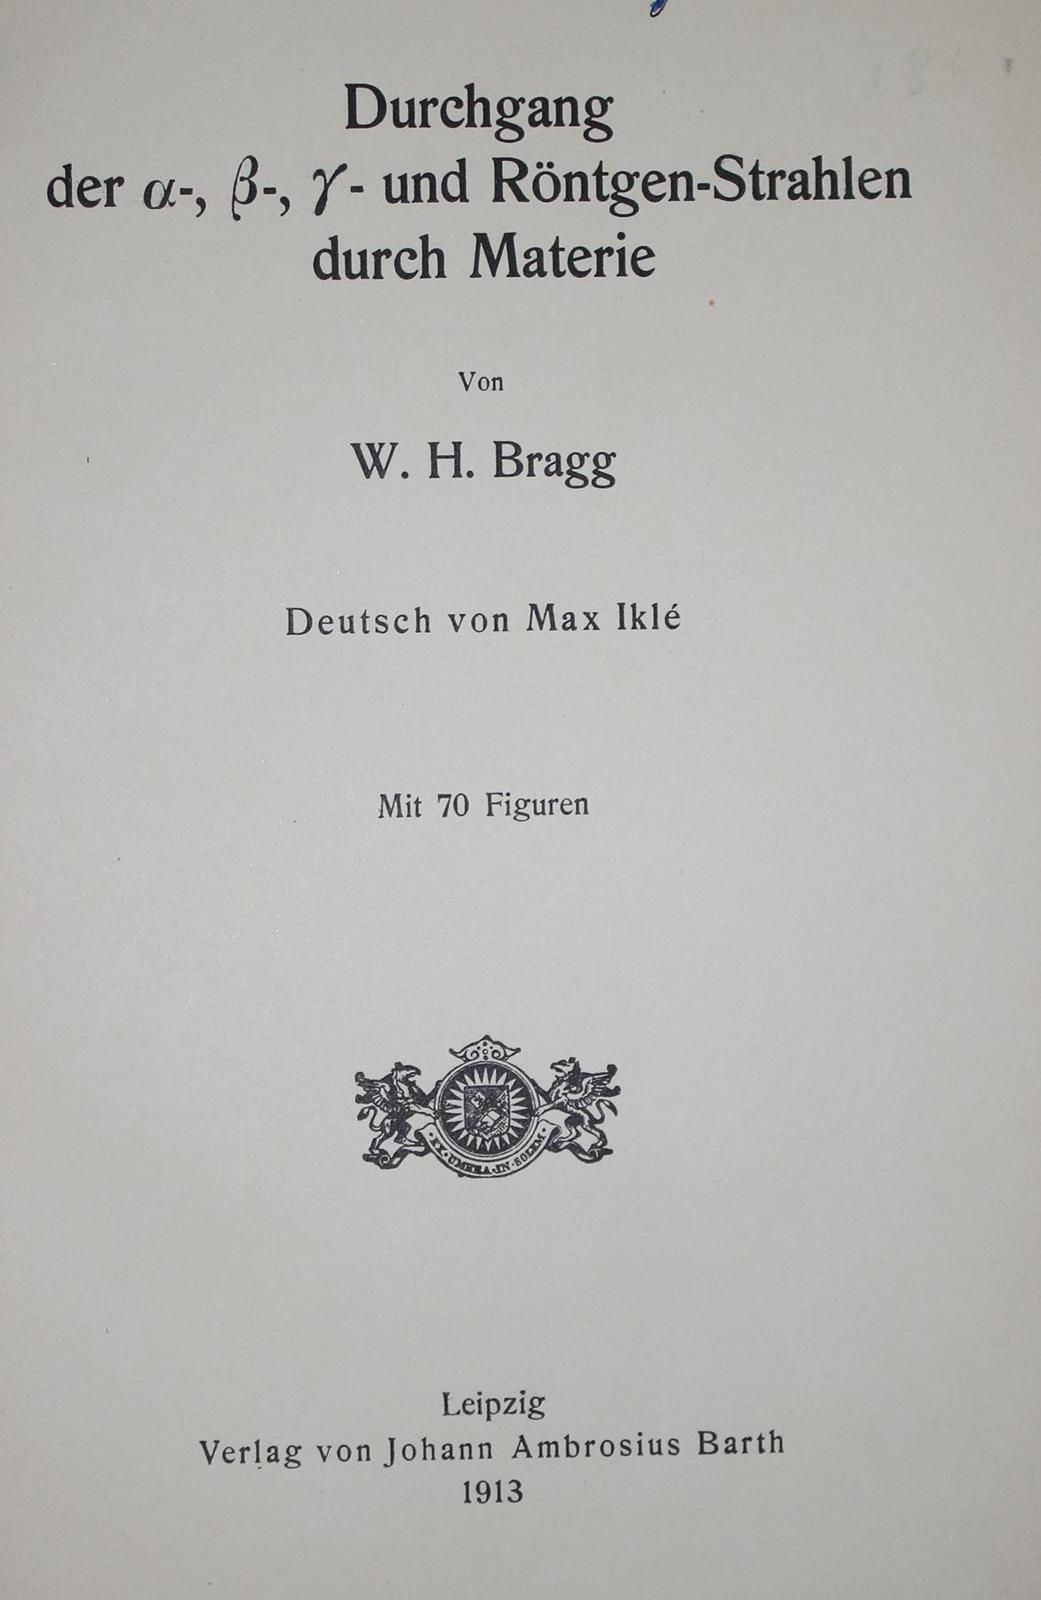 Bragg,W.H. | Bild Nr.1